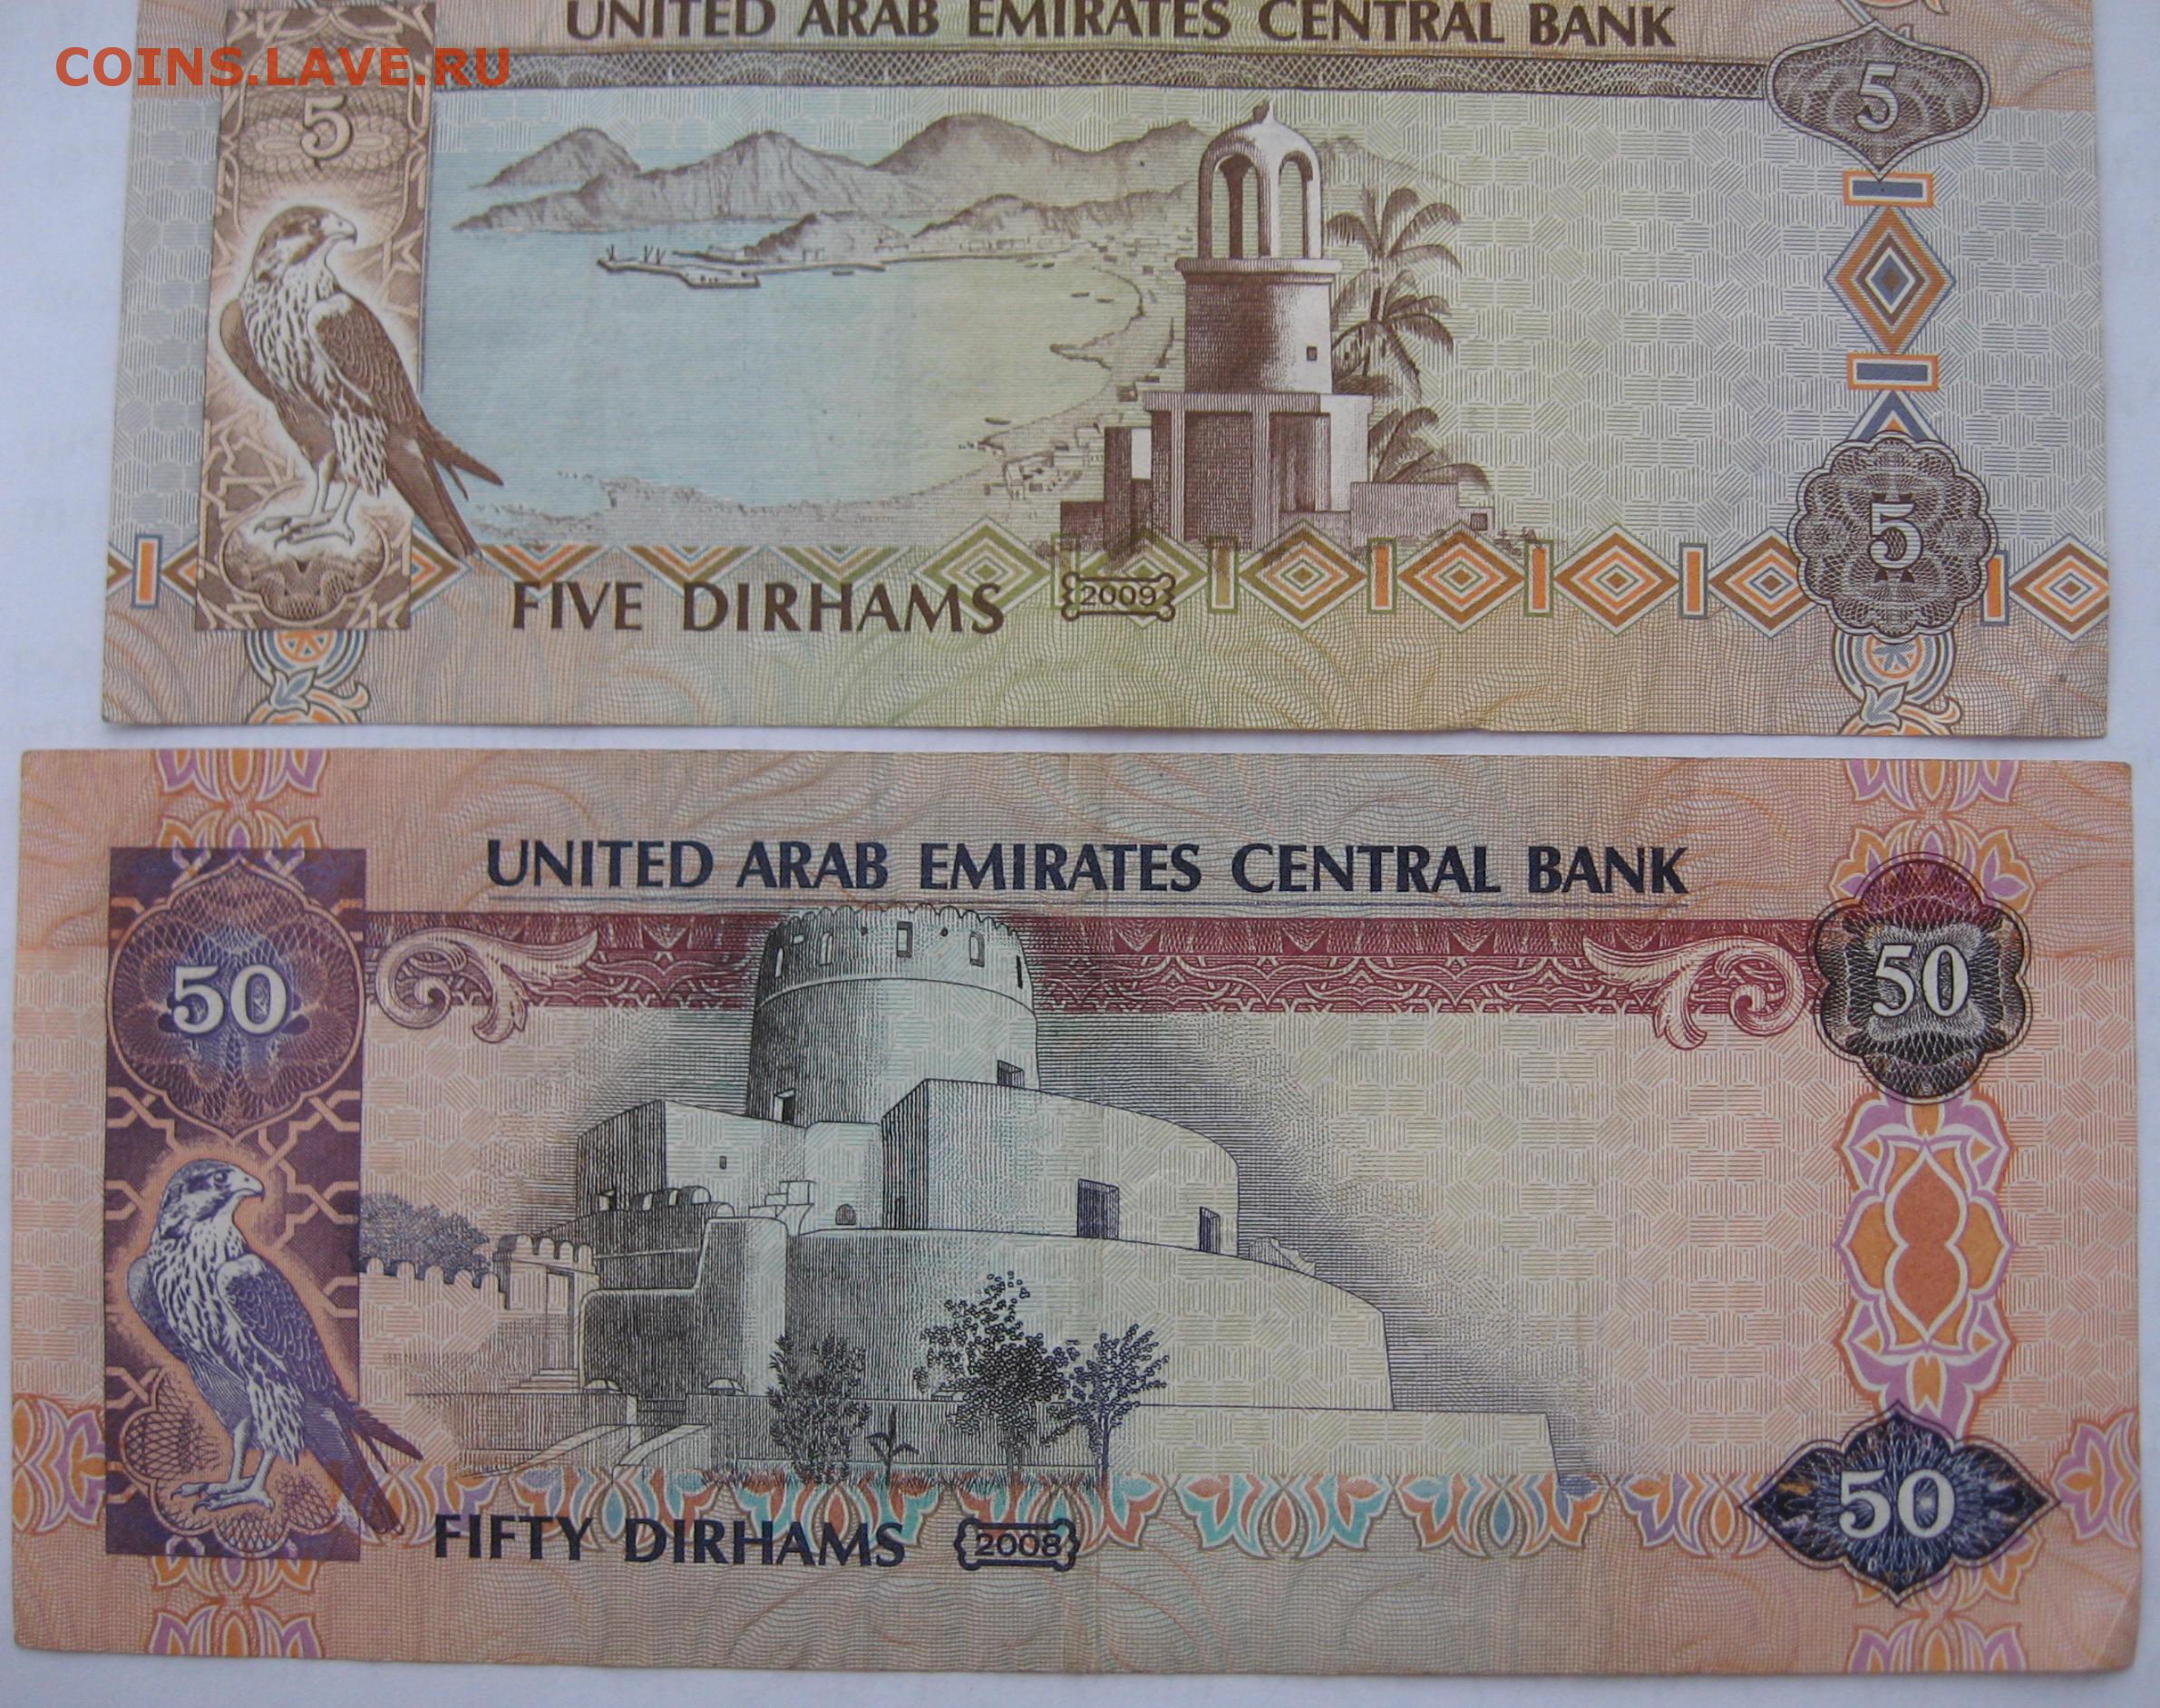 14000 дирхам в рубли. 50 Дирхам ОАЭ. Дирхам ОАЭ К рублю. 10 United arab Emirates Central Bank в рублях. 5 Dirhams 2013 г.